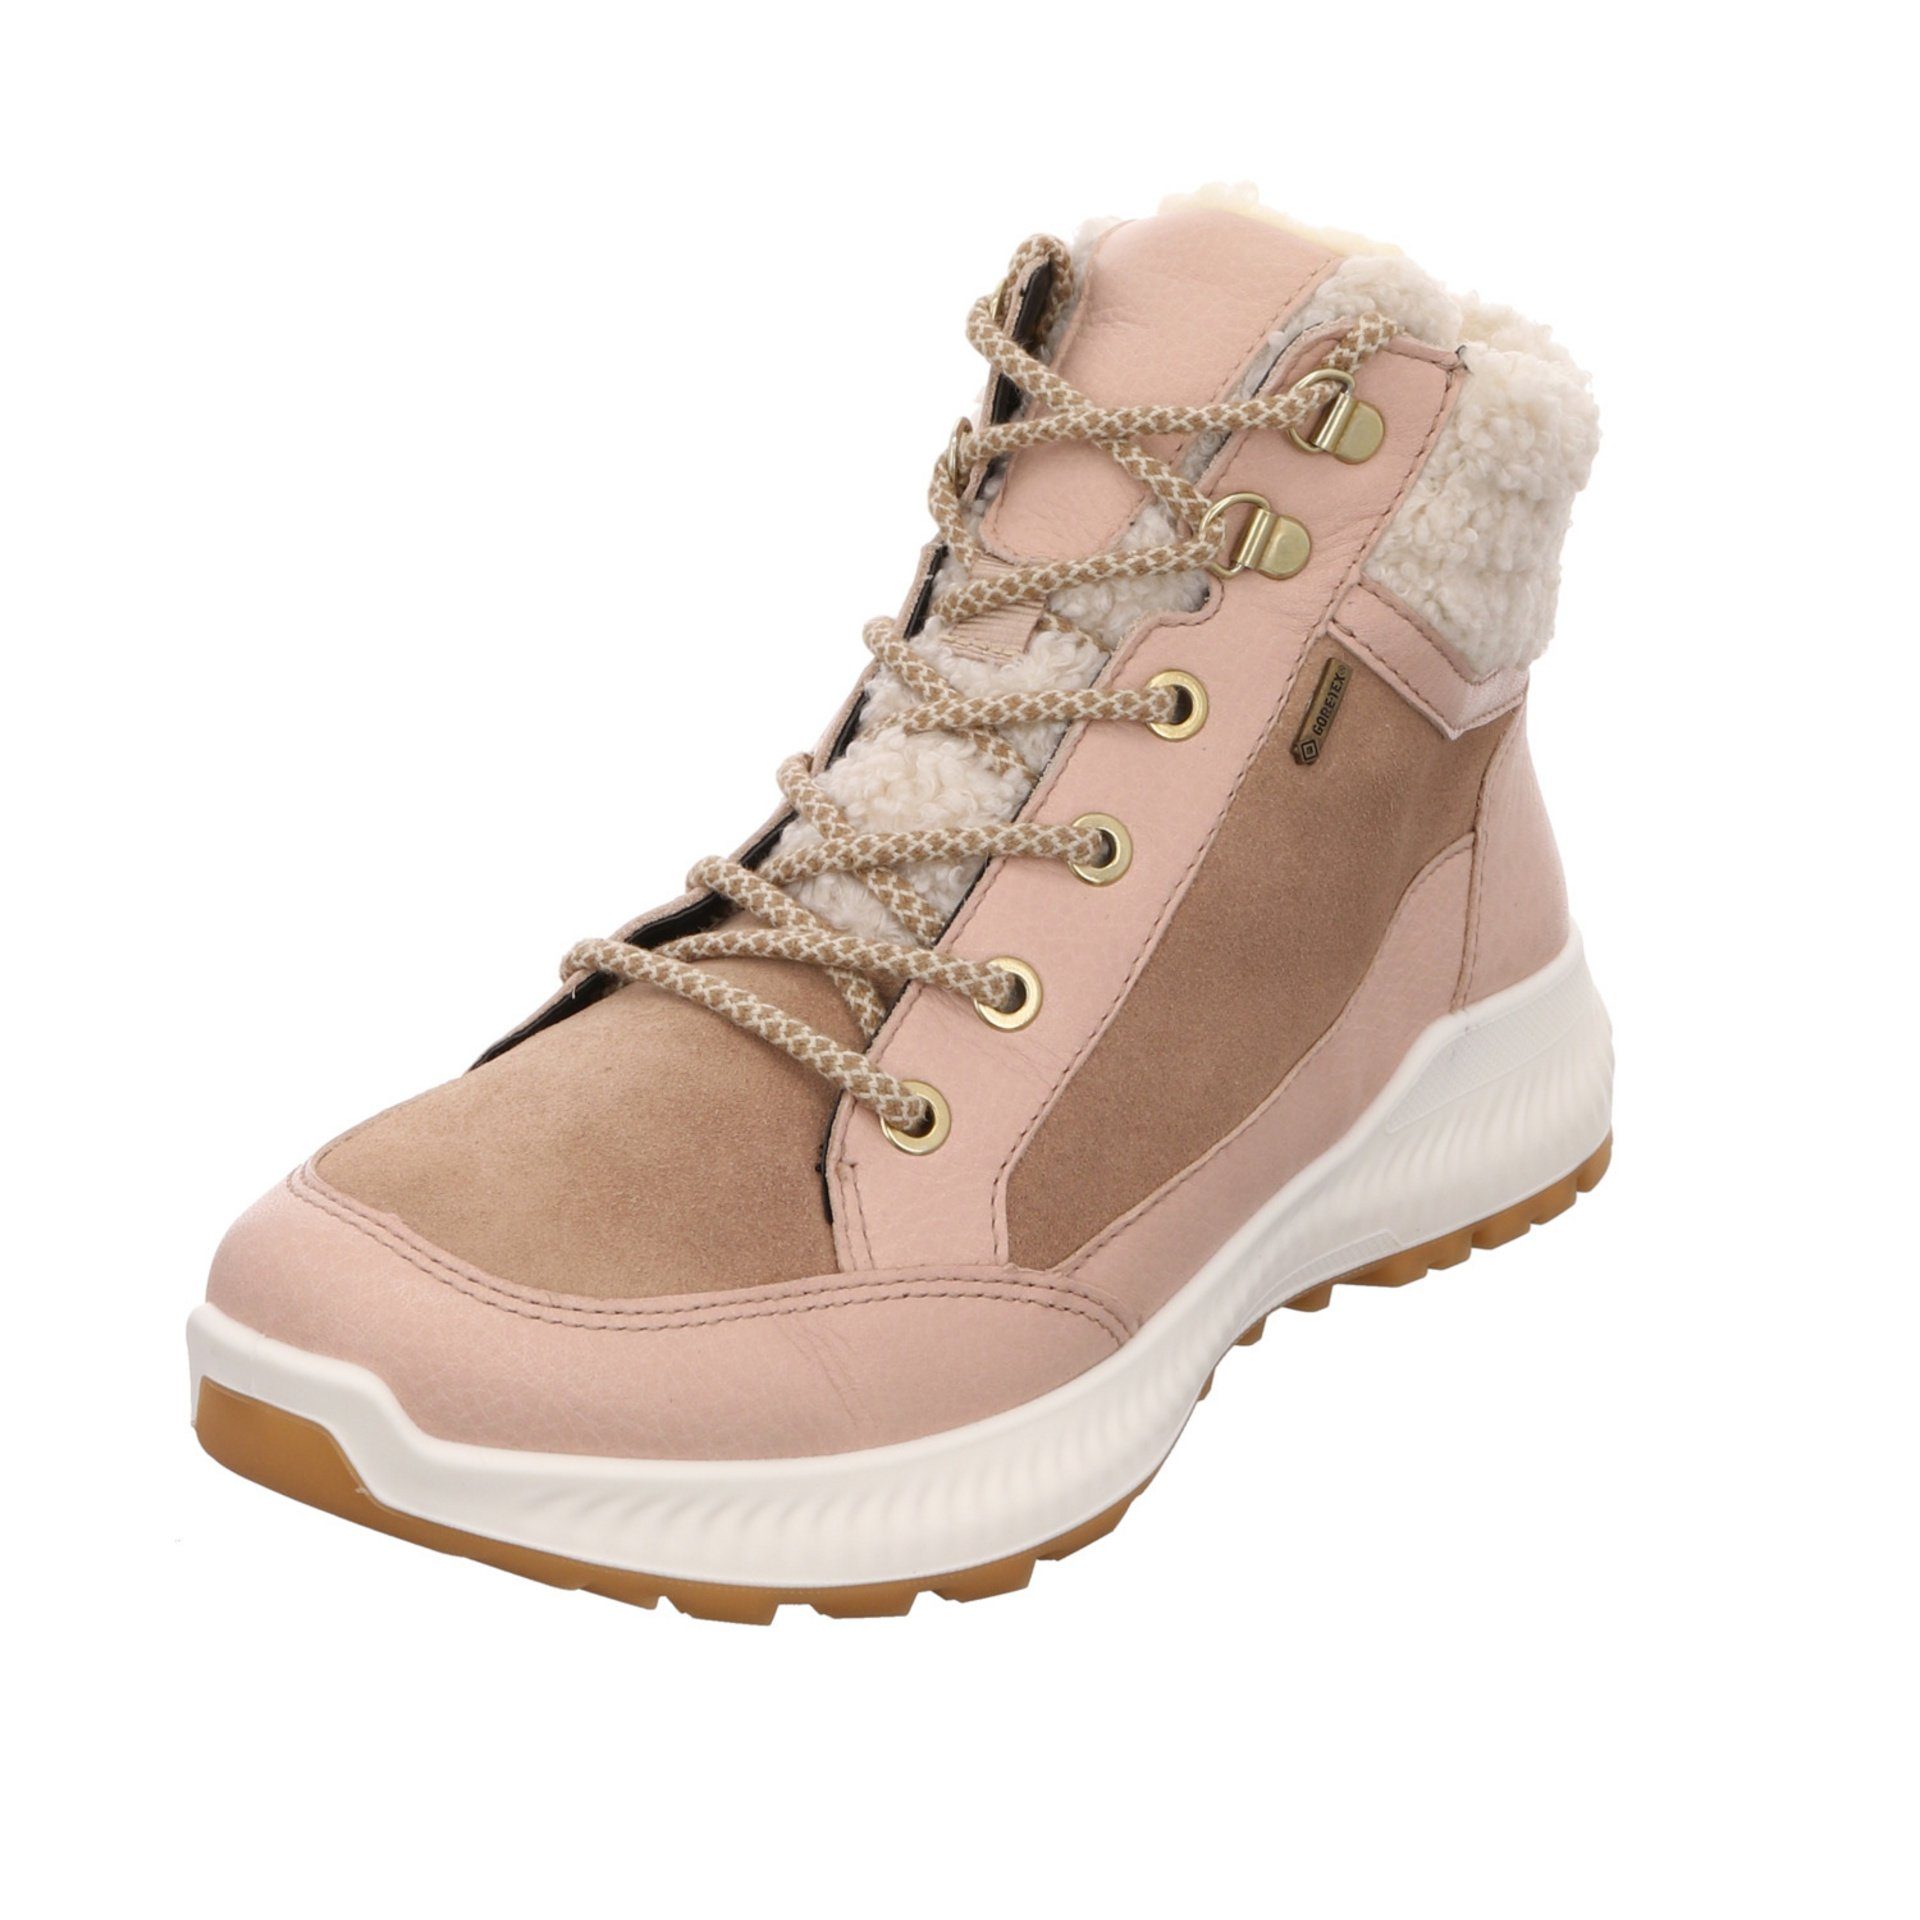 Damen Hiker Freizeit beige Elegant Ara Stiefel 046744 Schuhe Boots Leder-/Textilkombination Stiefelette